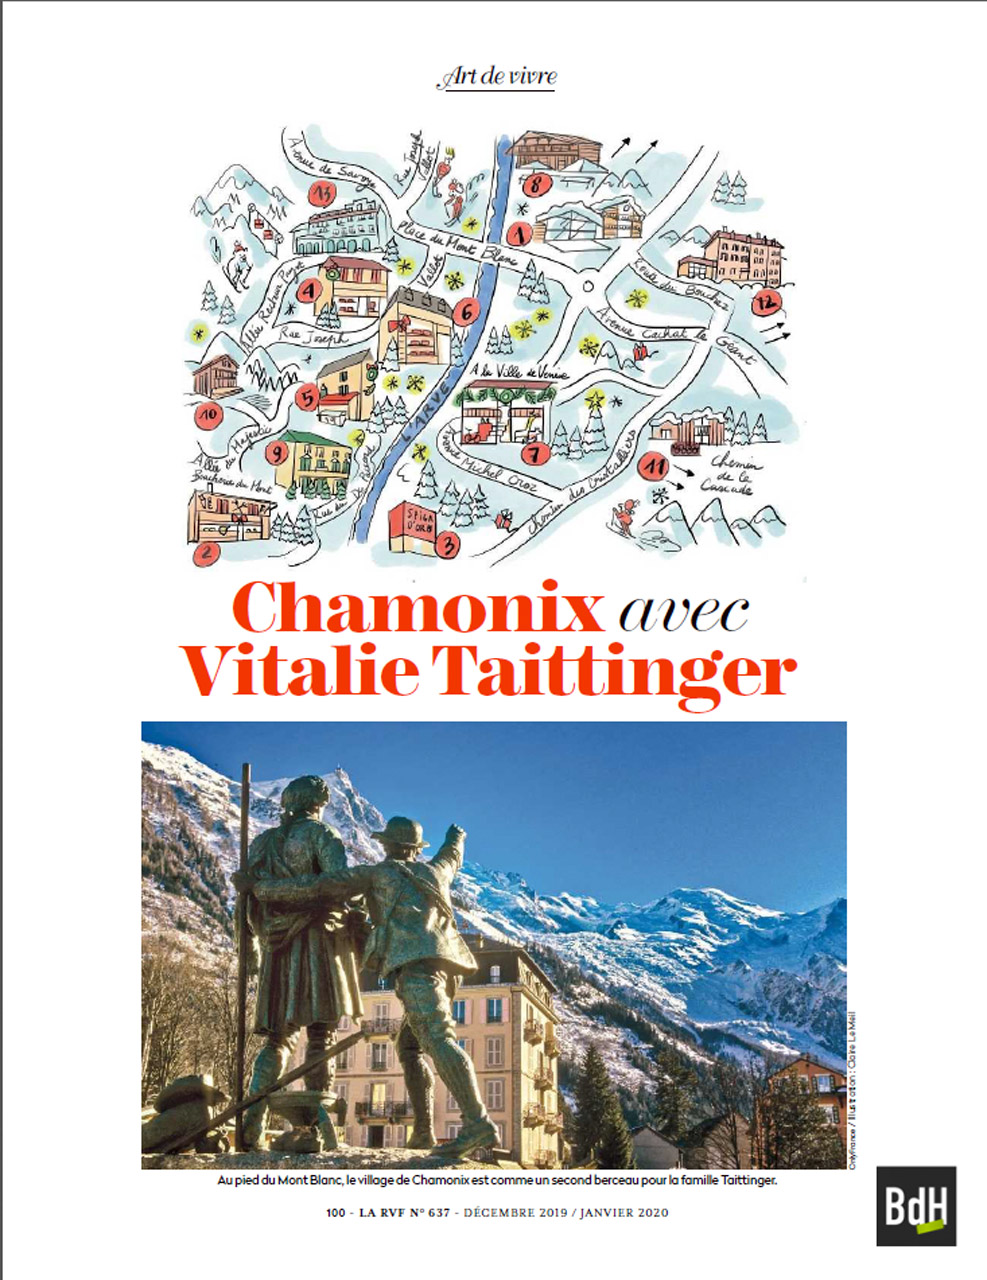 Les Taittinger ont une longue histoire d’amour avec la célèbre station des Alpes. Depuis trois générations, Chamonix est un lieu de rencontres et de libertés pour la famille champenoise.